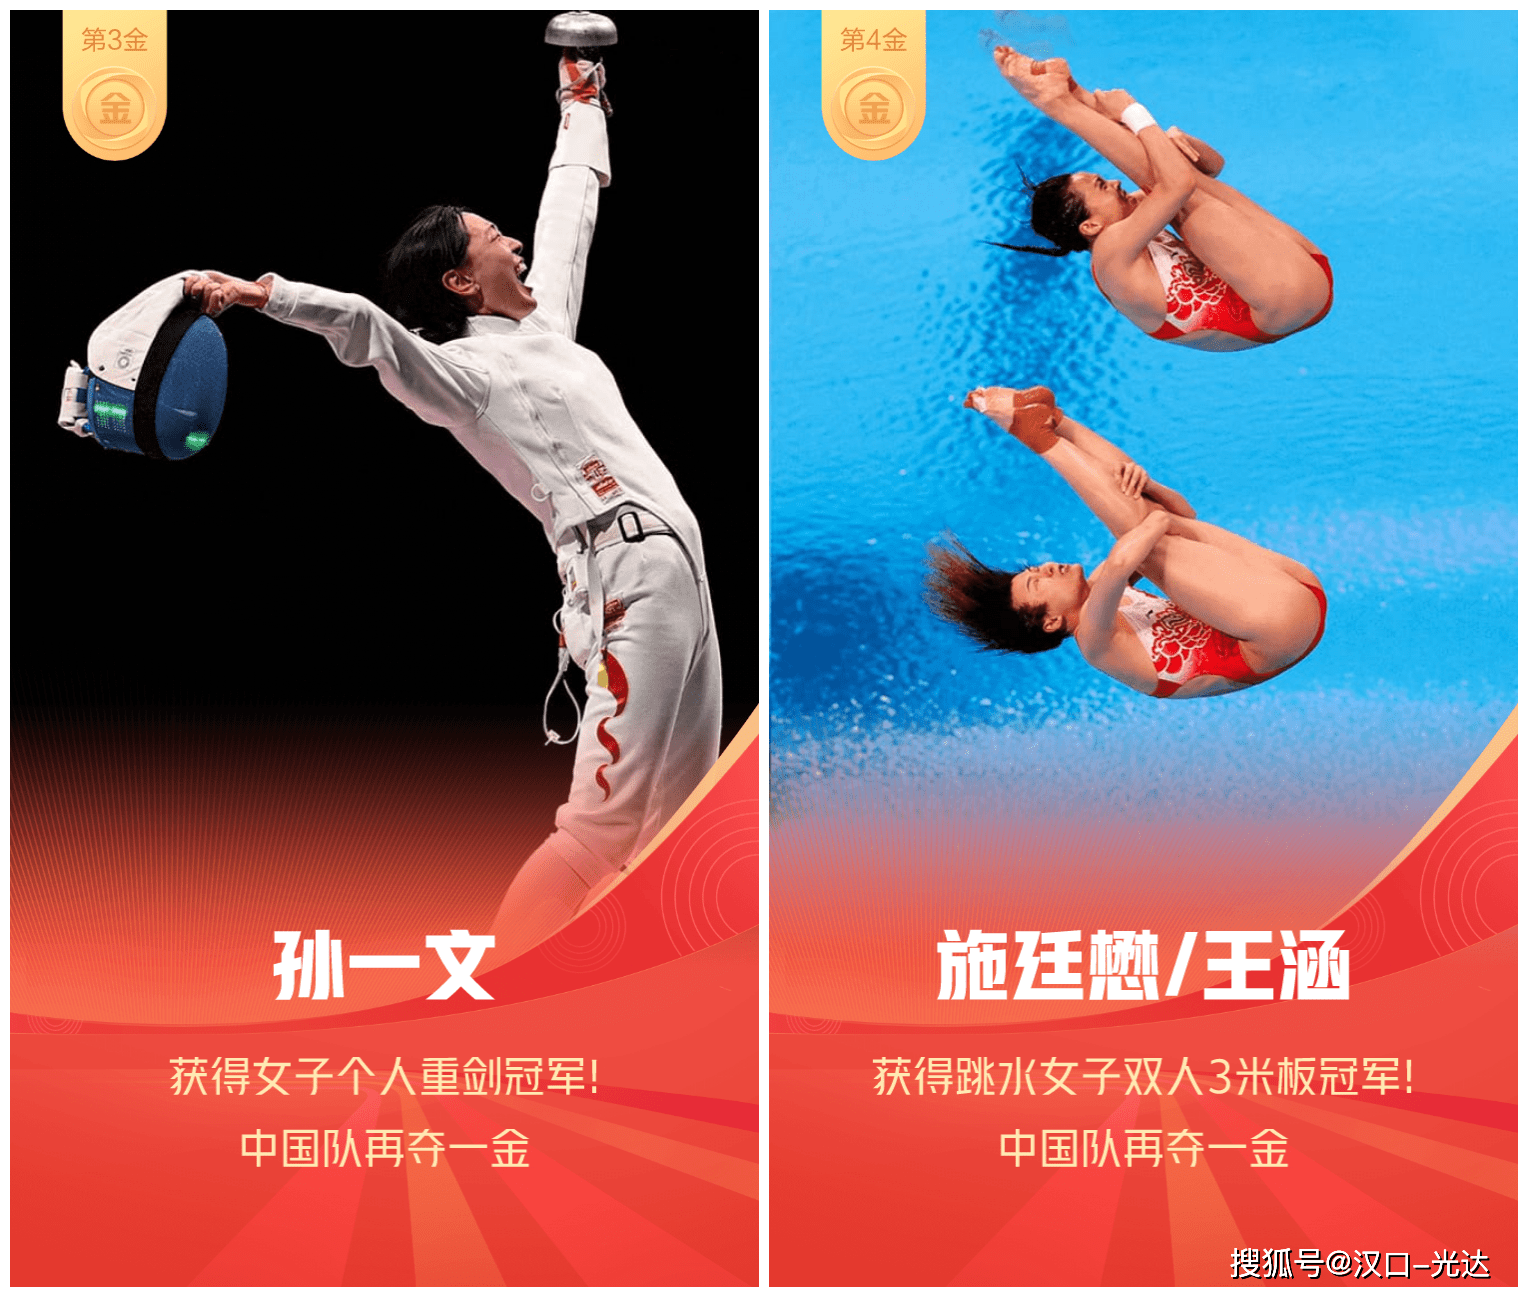 你收集齐了吗?东京奥运会中国运动员金牌获得者"全家福"